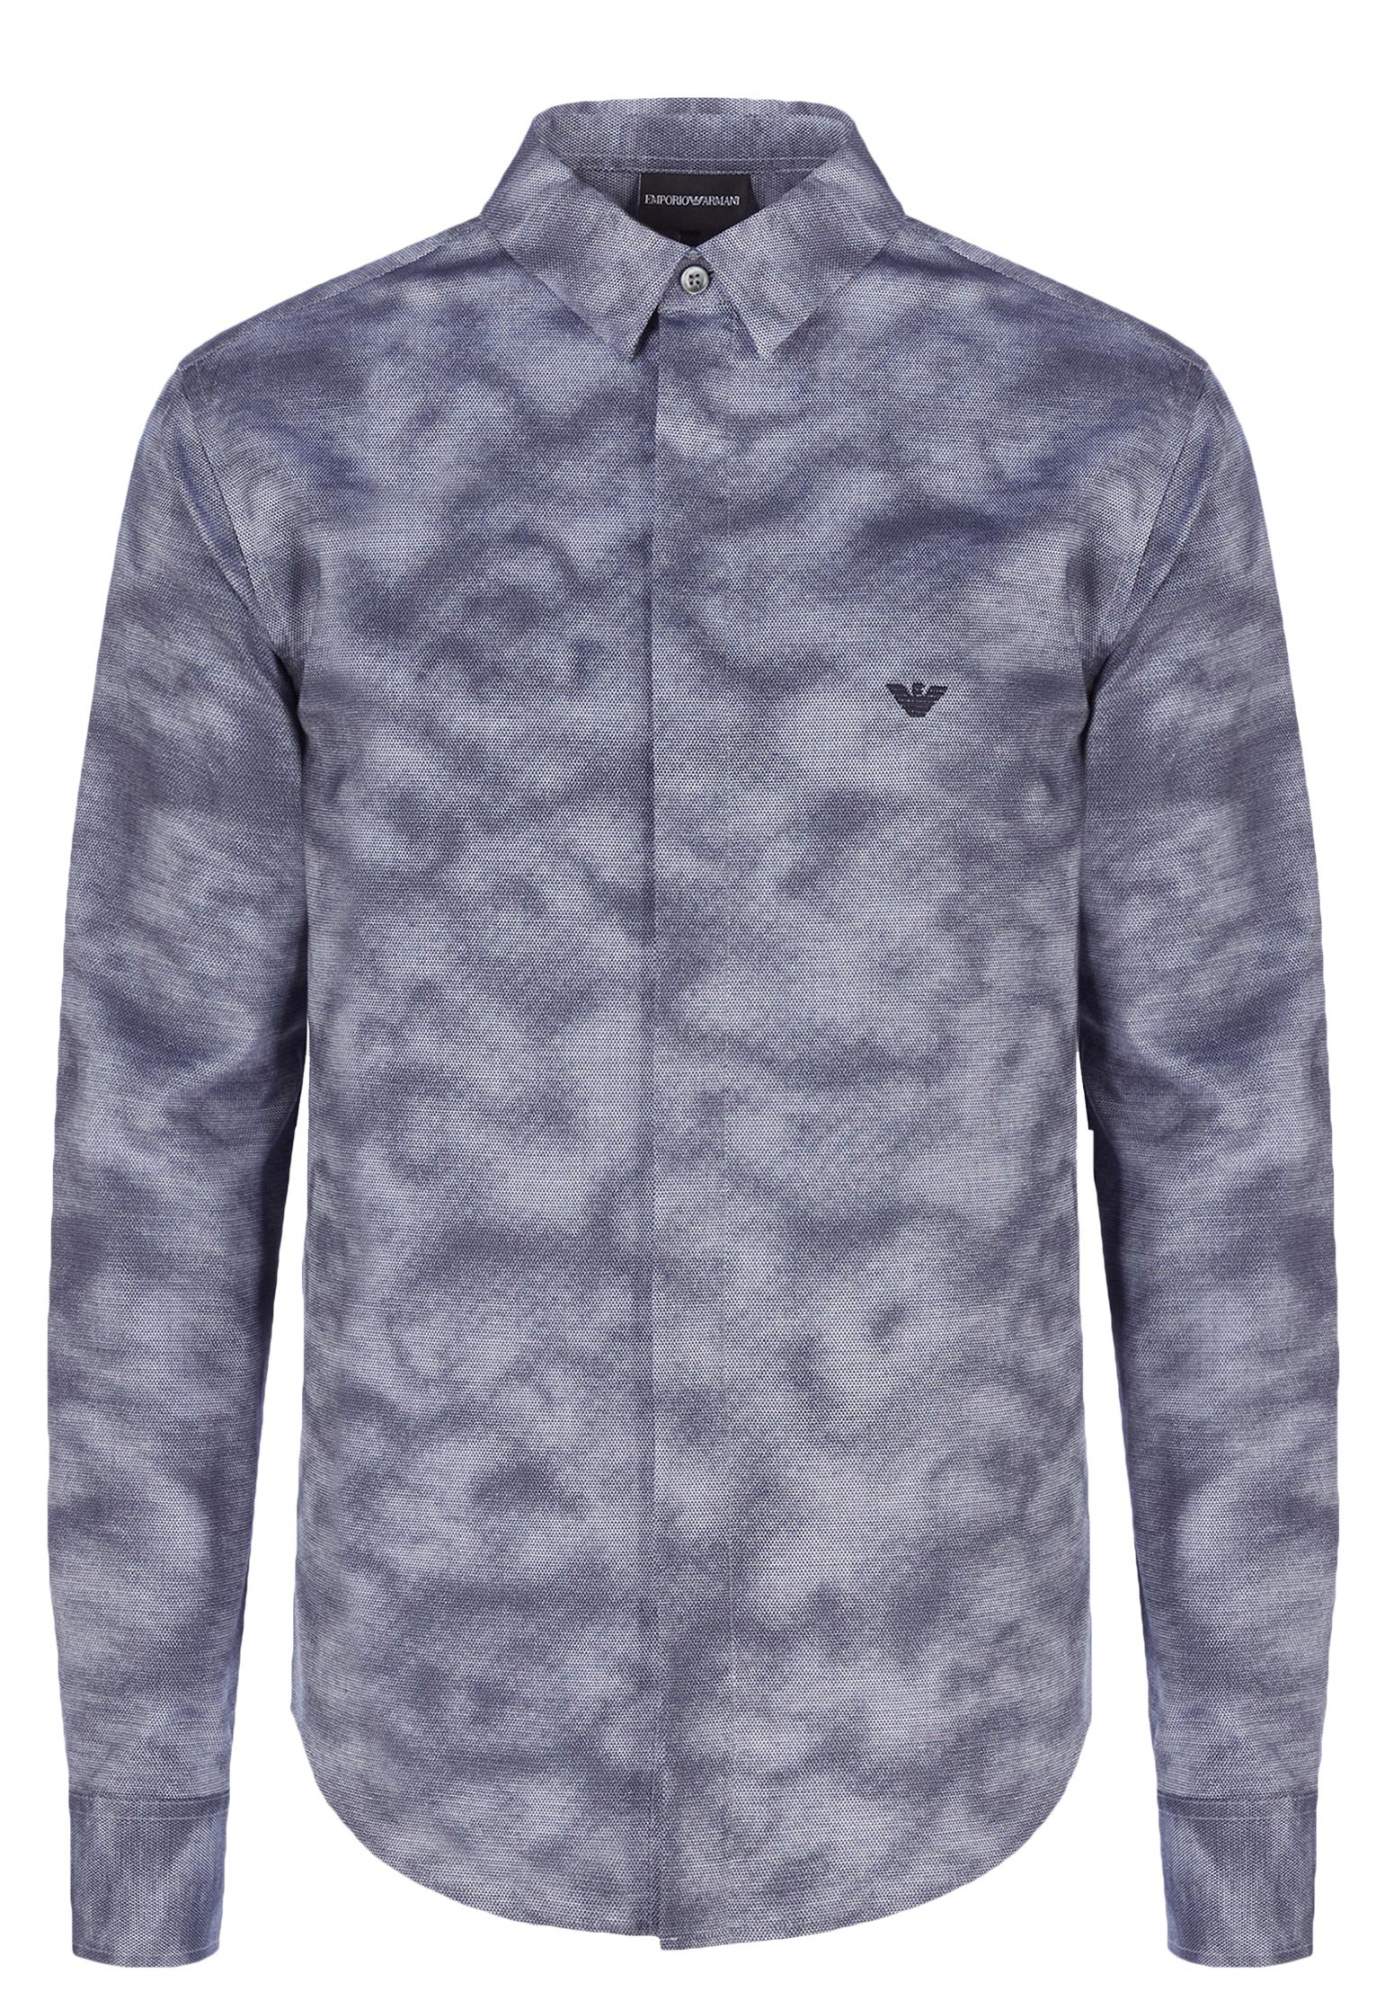 Рубашка мужская Emporio Armani 121708 синяя M